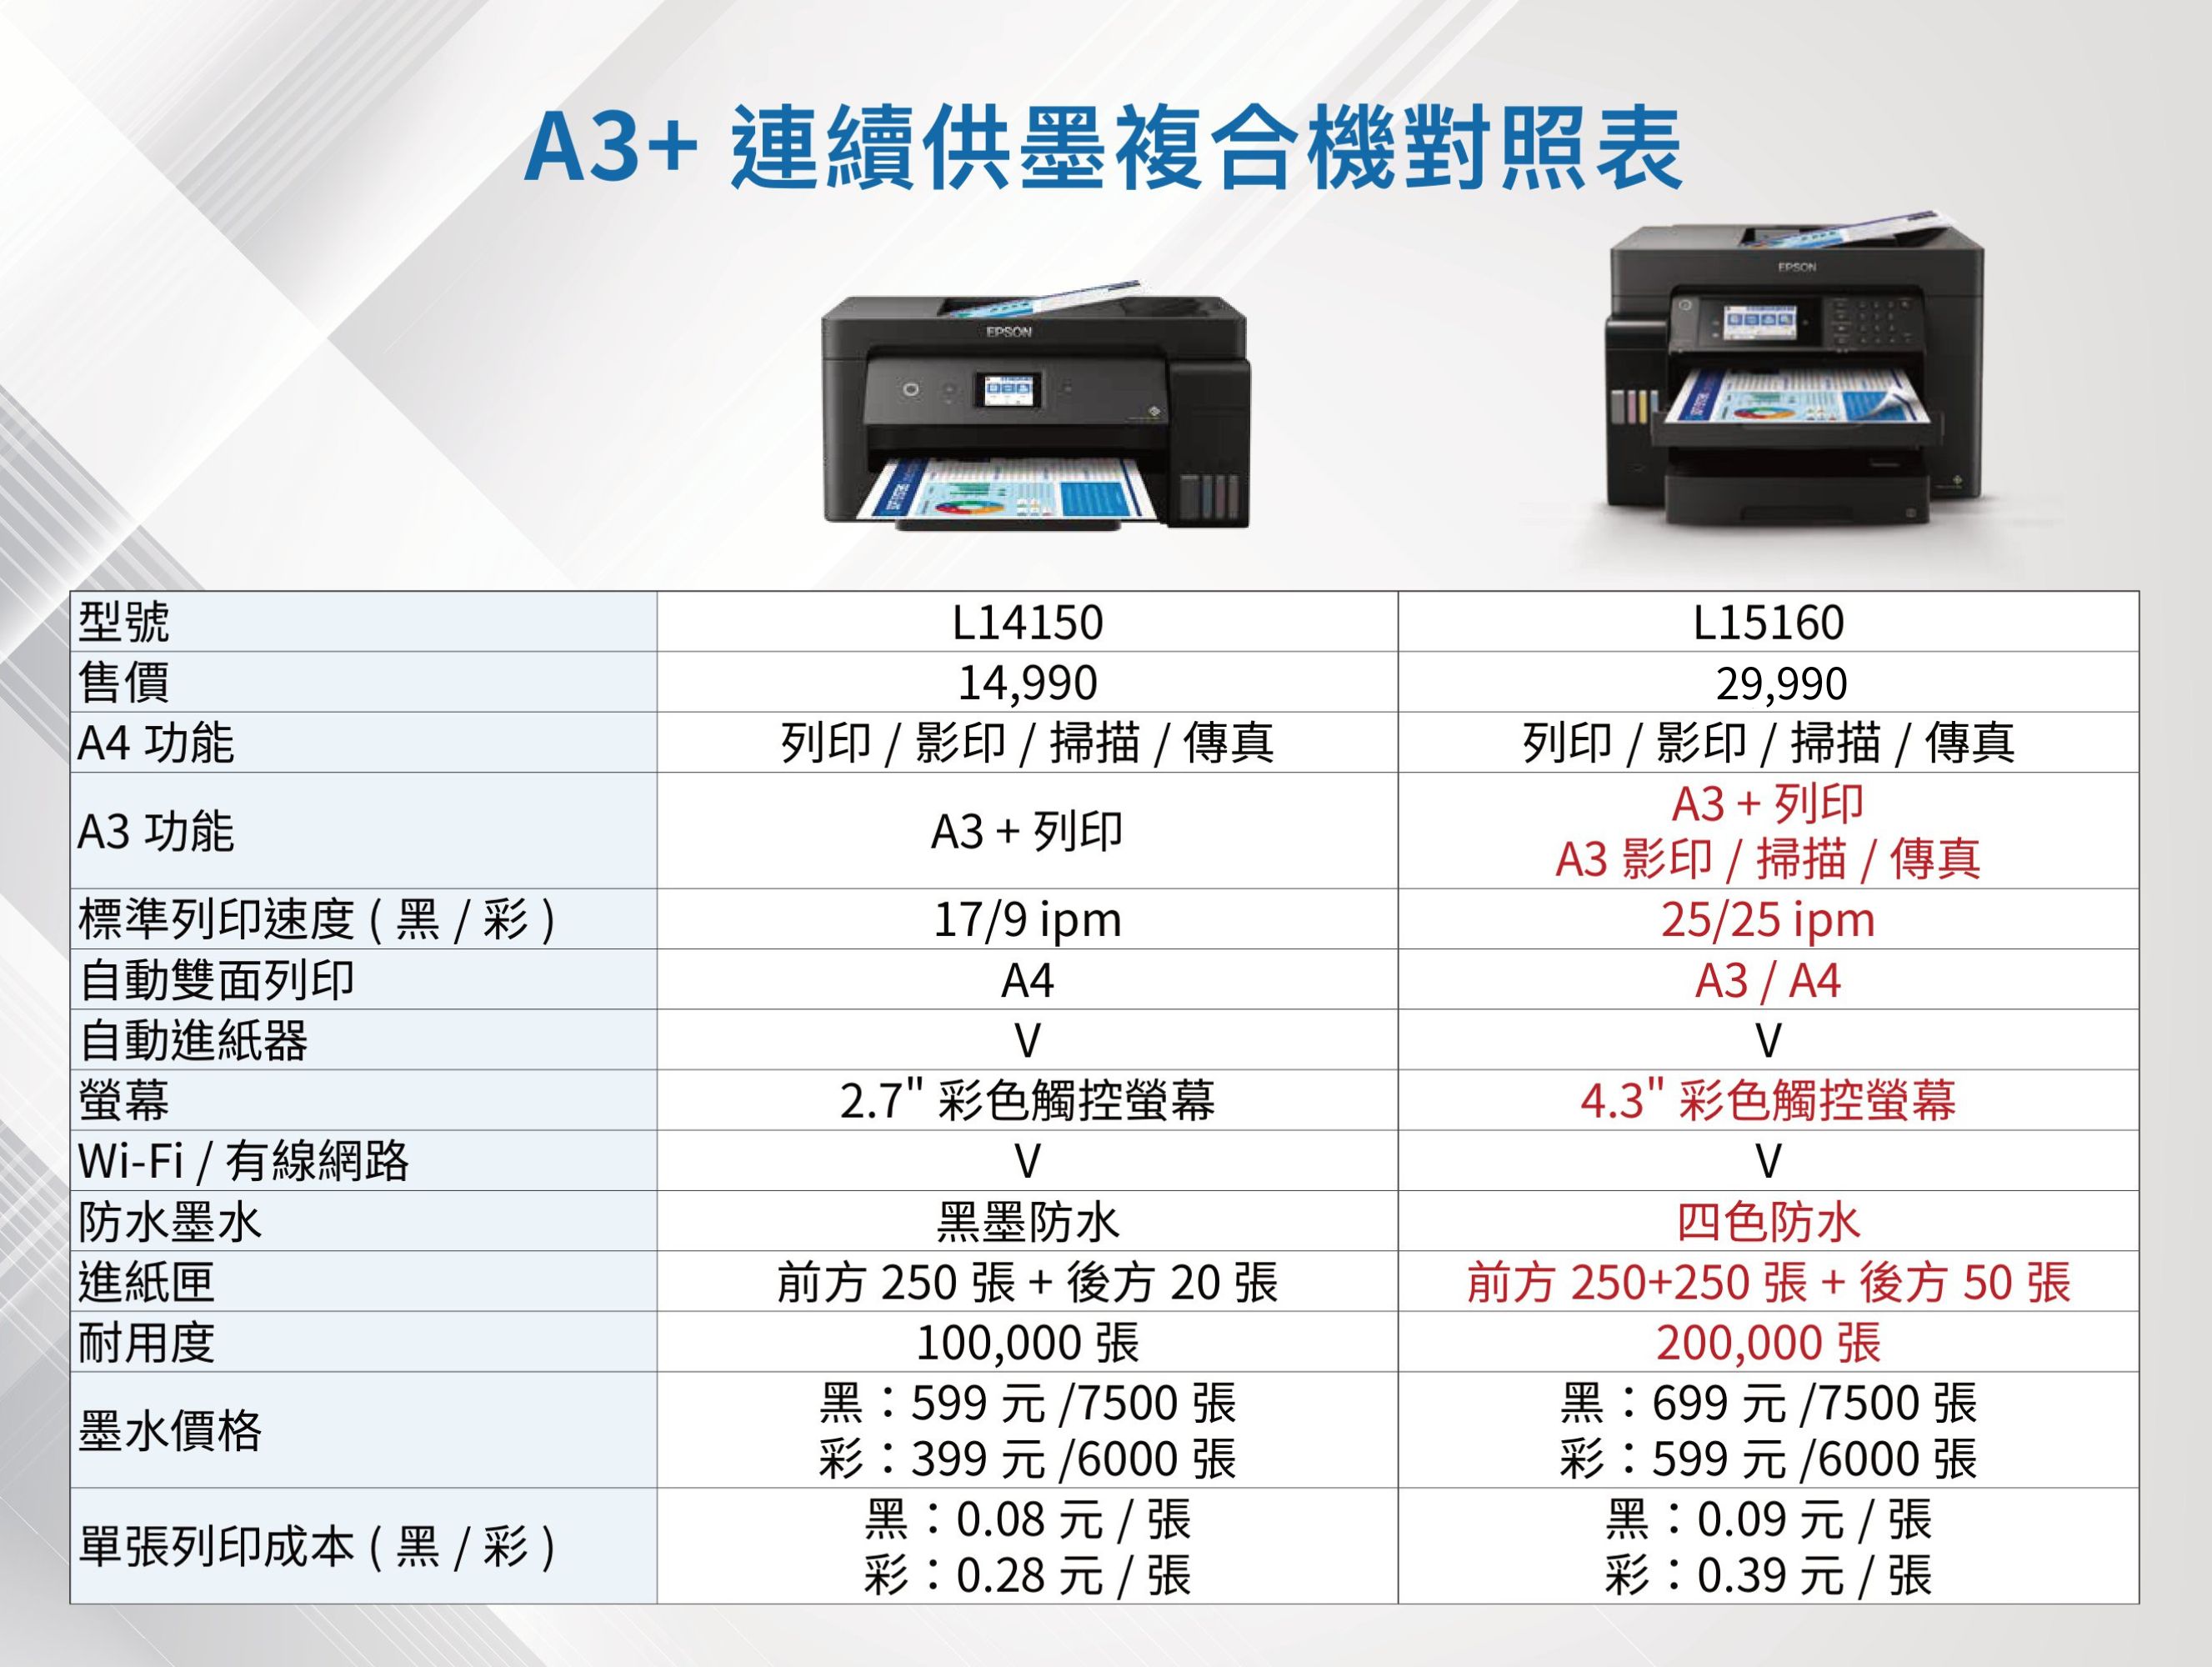 A3+ 連續供墨複合機對照表EPSONEPSON型號售價A4 功能A3 功能標準列印速度(黑/彩)自動雙面列印L14150L1516014,99029,990列印/影印/掃描/傳真列印 / 影印/掃描/傳真A3 + 列印A3 + 列印A3 影印/掃描/傳真17/9 ipmA425/25 ipmA3 / A44.3 彩色觸控螢幕2.7 彩色觸控螢幕黑墨防水自動進紙器螢幕Wi-Fi/有線網路防水墨水進紙匣耐用度前方 250  + 後方 20 張100,000張墨水價格單張列印成本(黑/彩)黑:599元/7500 張彩:399元/6000張黑:0.08元/張彩:0.28元/張四色防水前方 250+250張+後方50張200,000張黑:699元 /7500 張彩:599元/6000 張黑:0.09元/張彩:0.39元 / 張